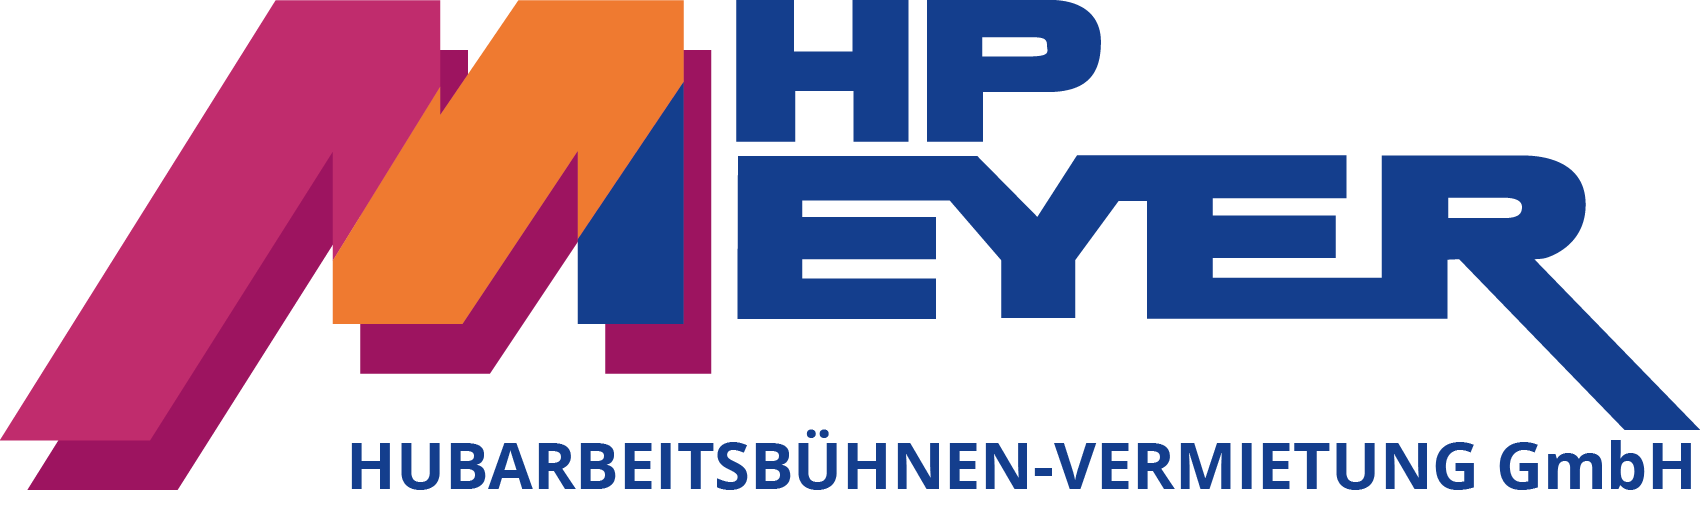 H.-P. Meyer Hubarbeitsbühnen-Vermietung GmbH